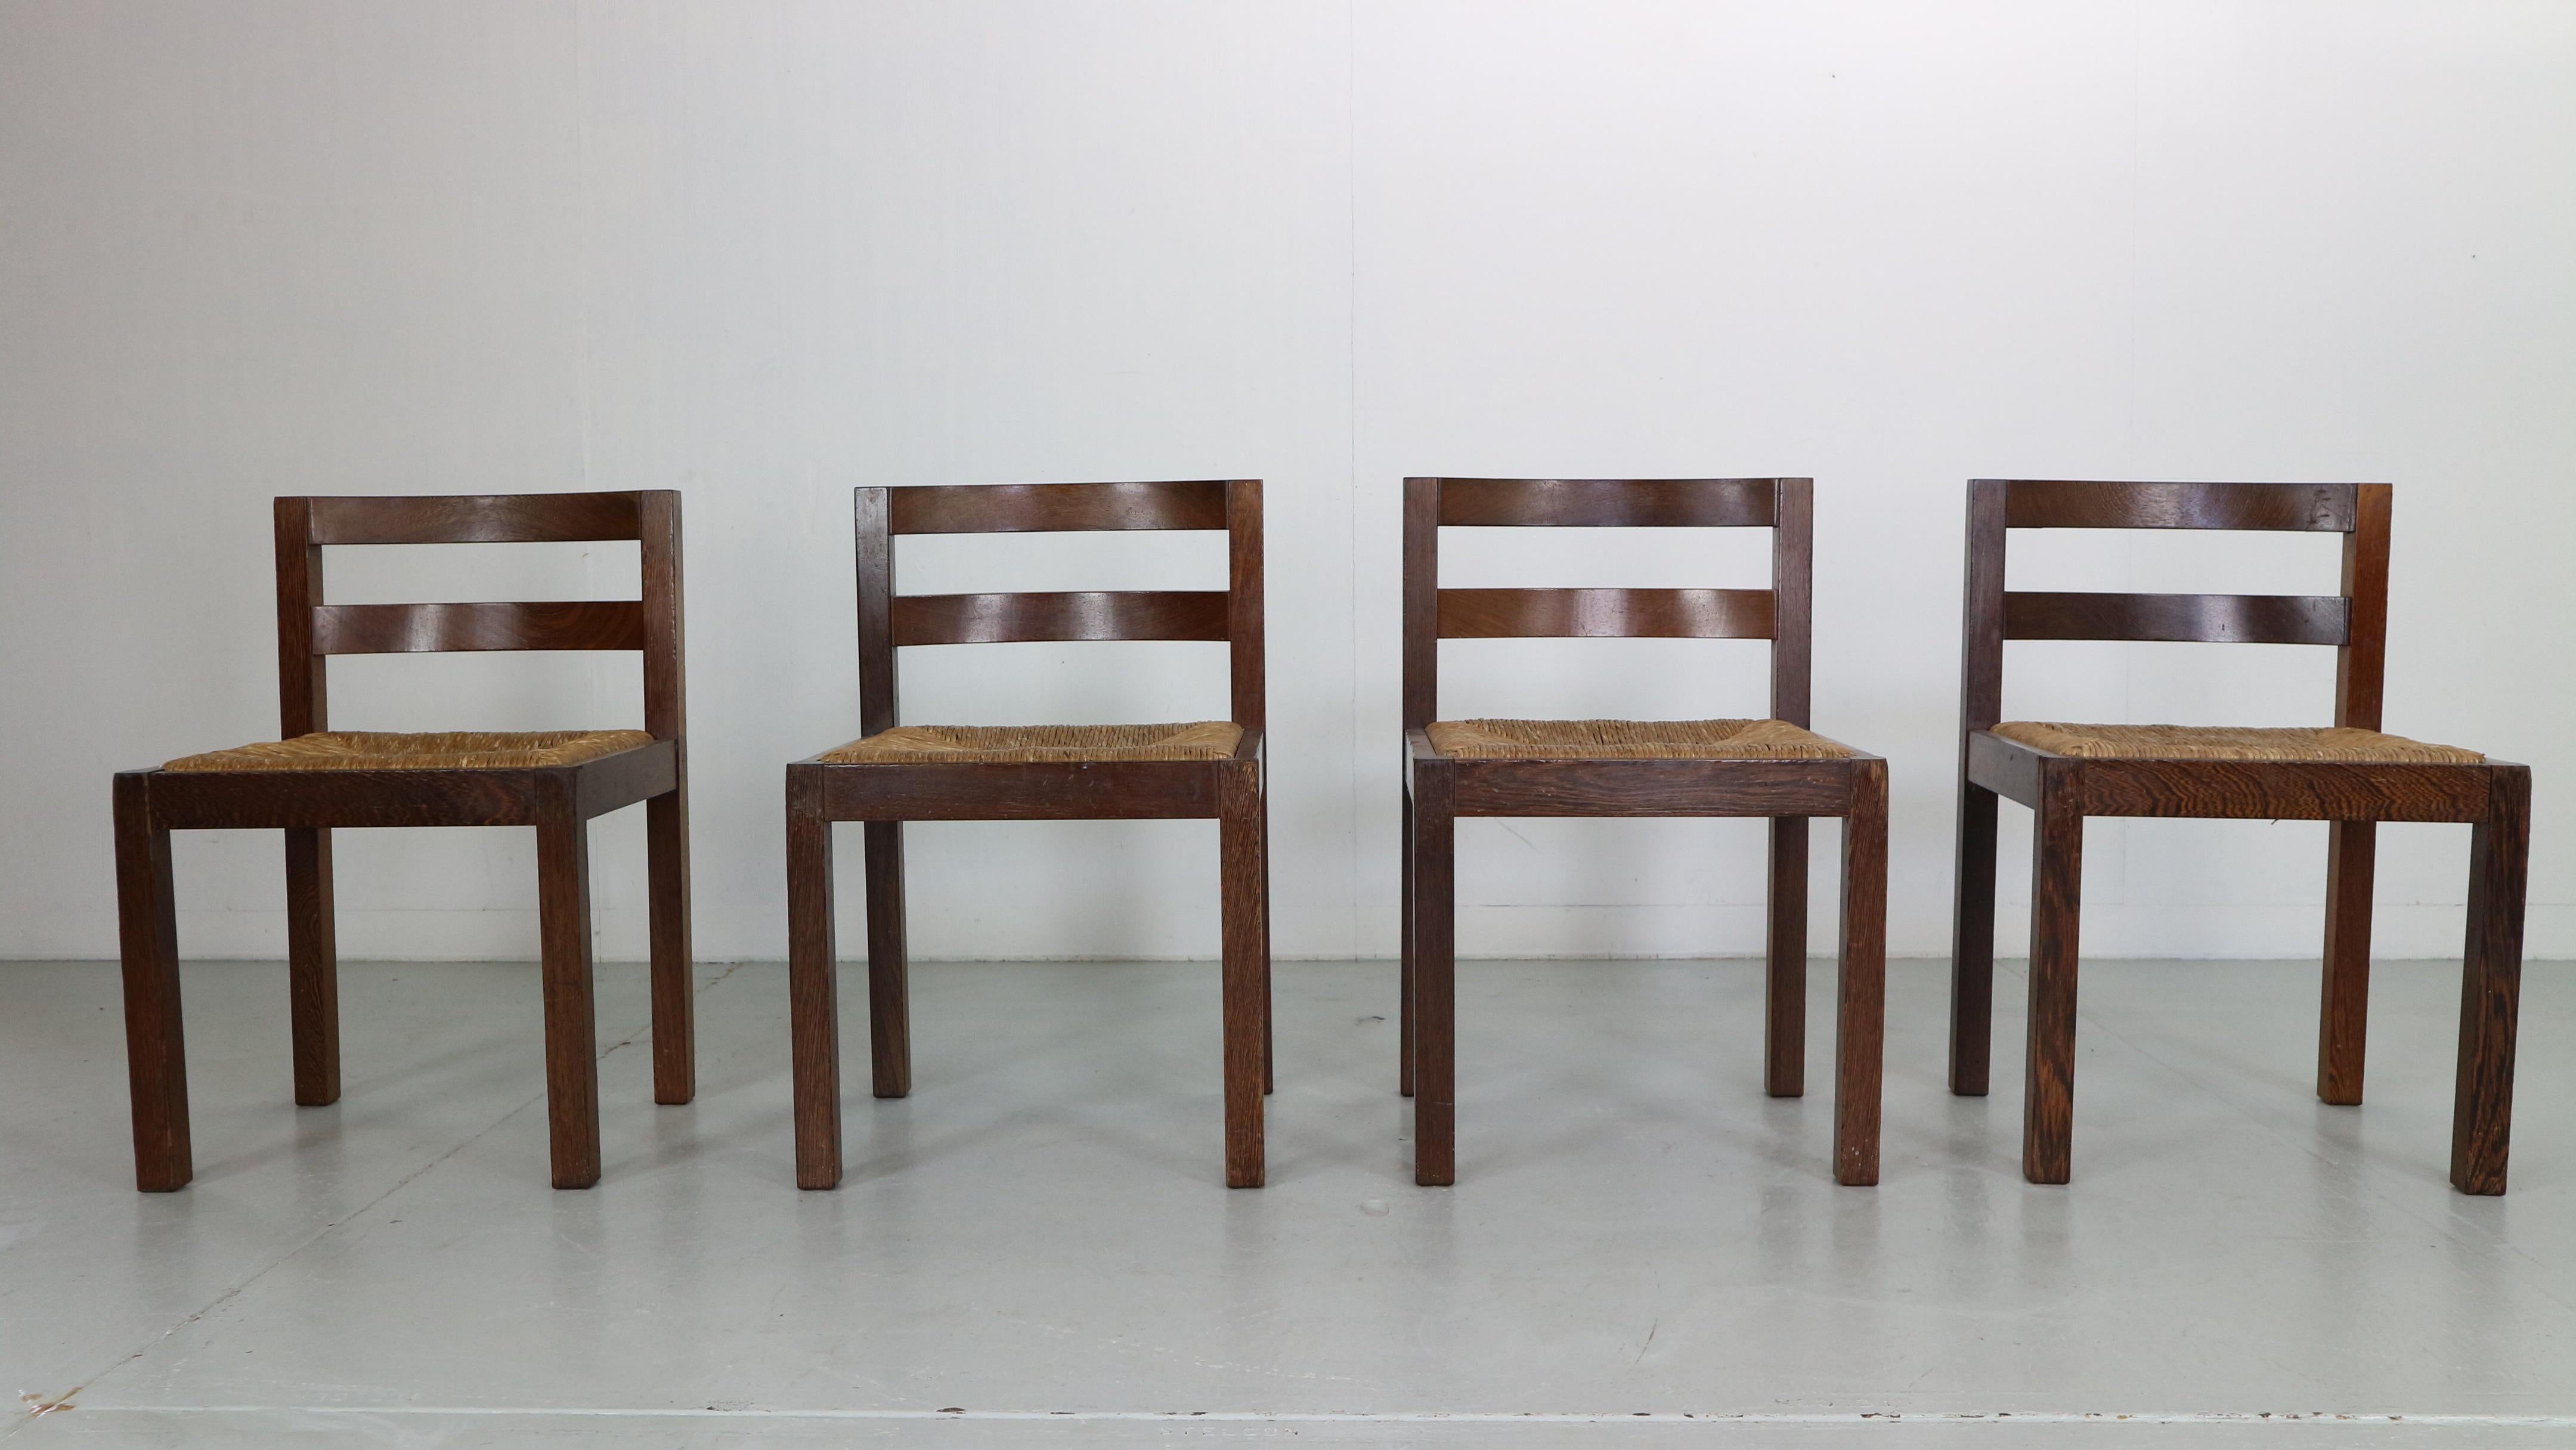 Période moderne du milieu du siècle, le très célèbre designer de meubles néerlandais Martin Visser a conçu ces chaises pour t' Spectrum dans les années 1960, aux Pays-Bas.

L'ensemble de 4 chaises est en très bon état d'origine.
Assise en rotin et